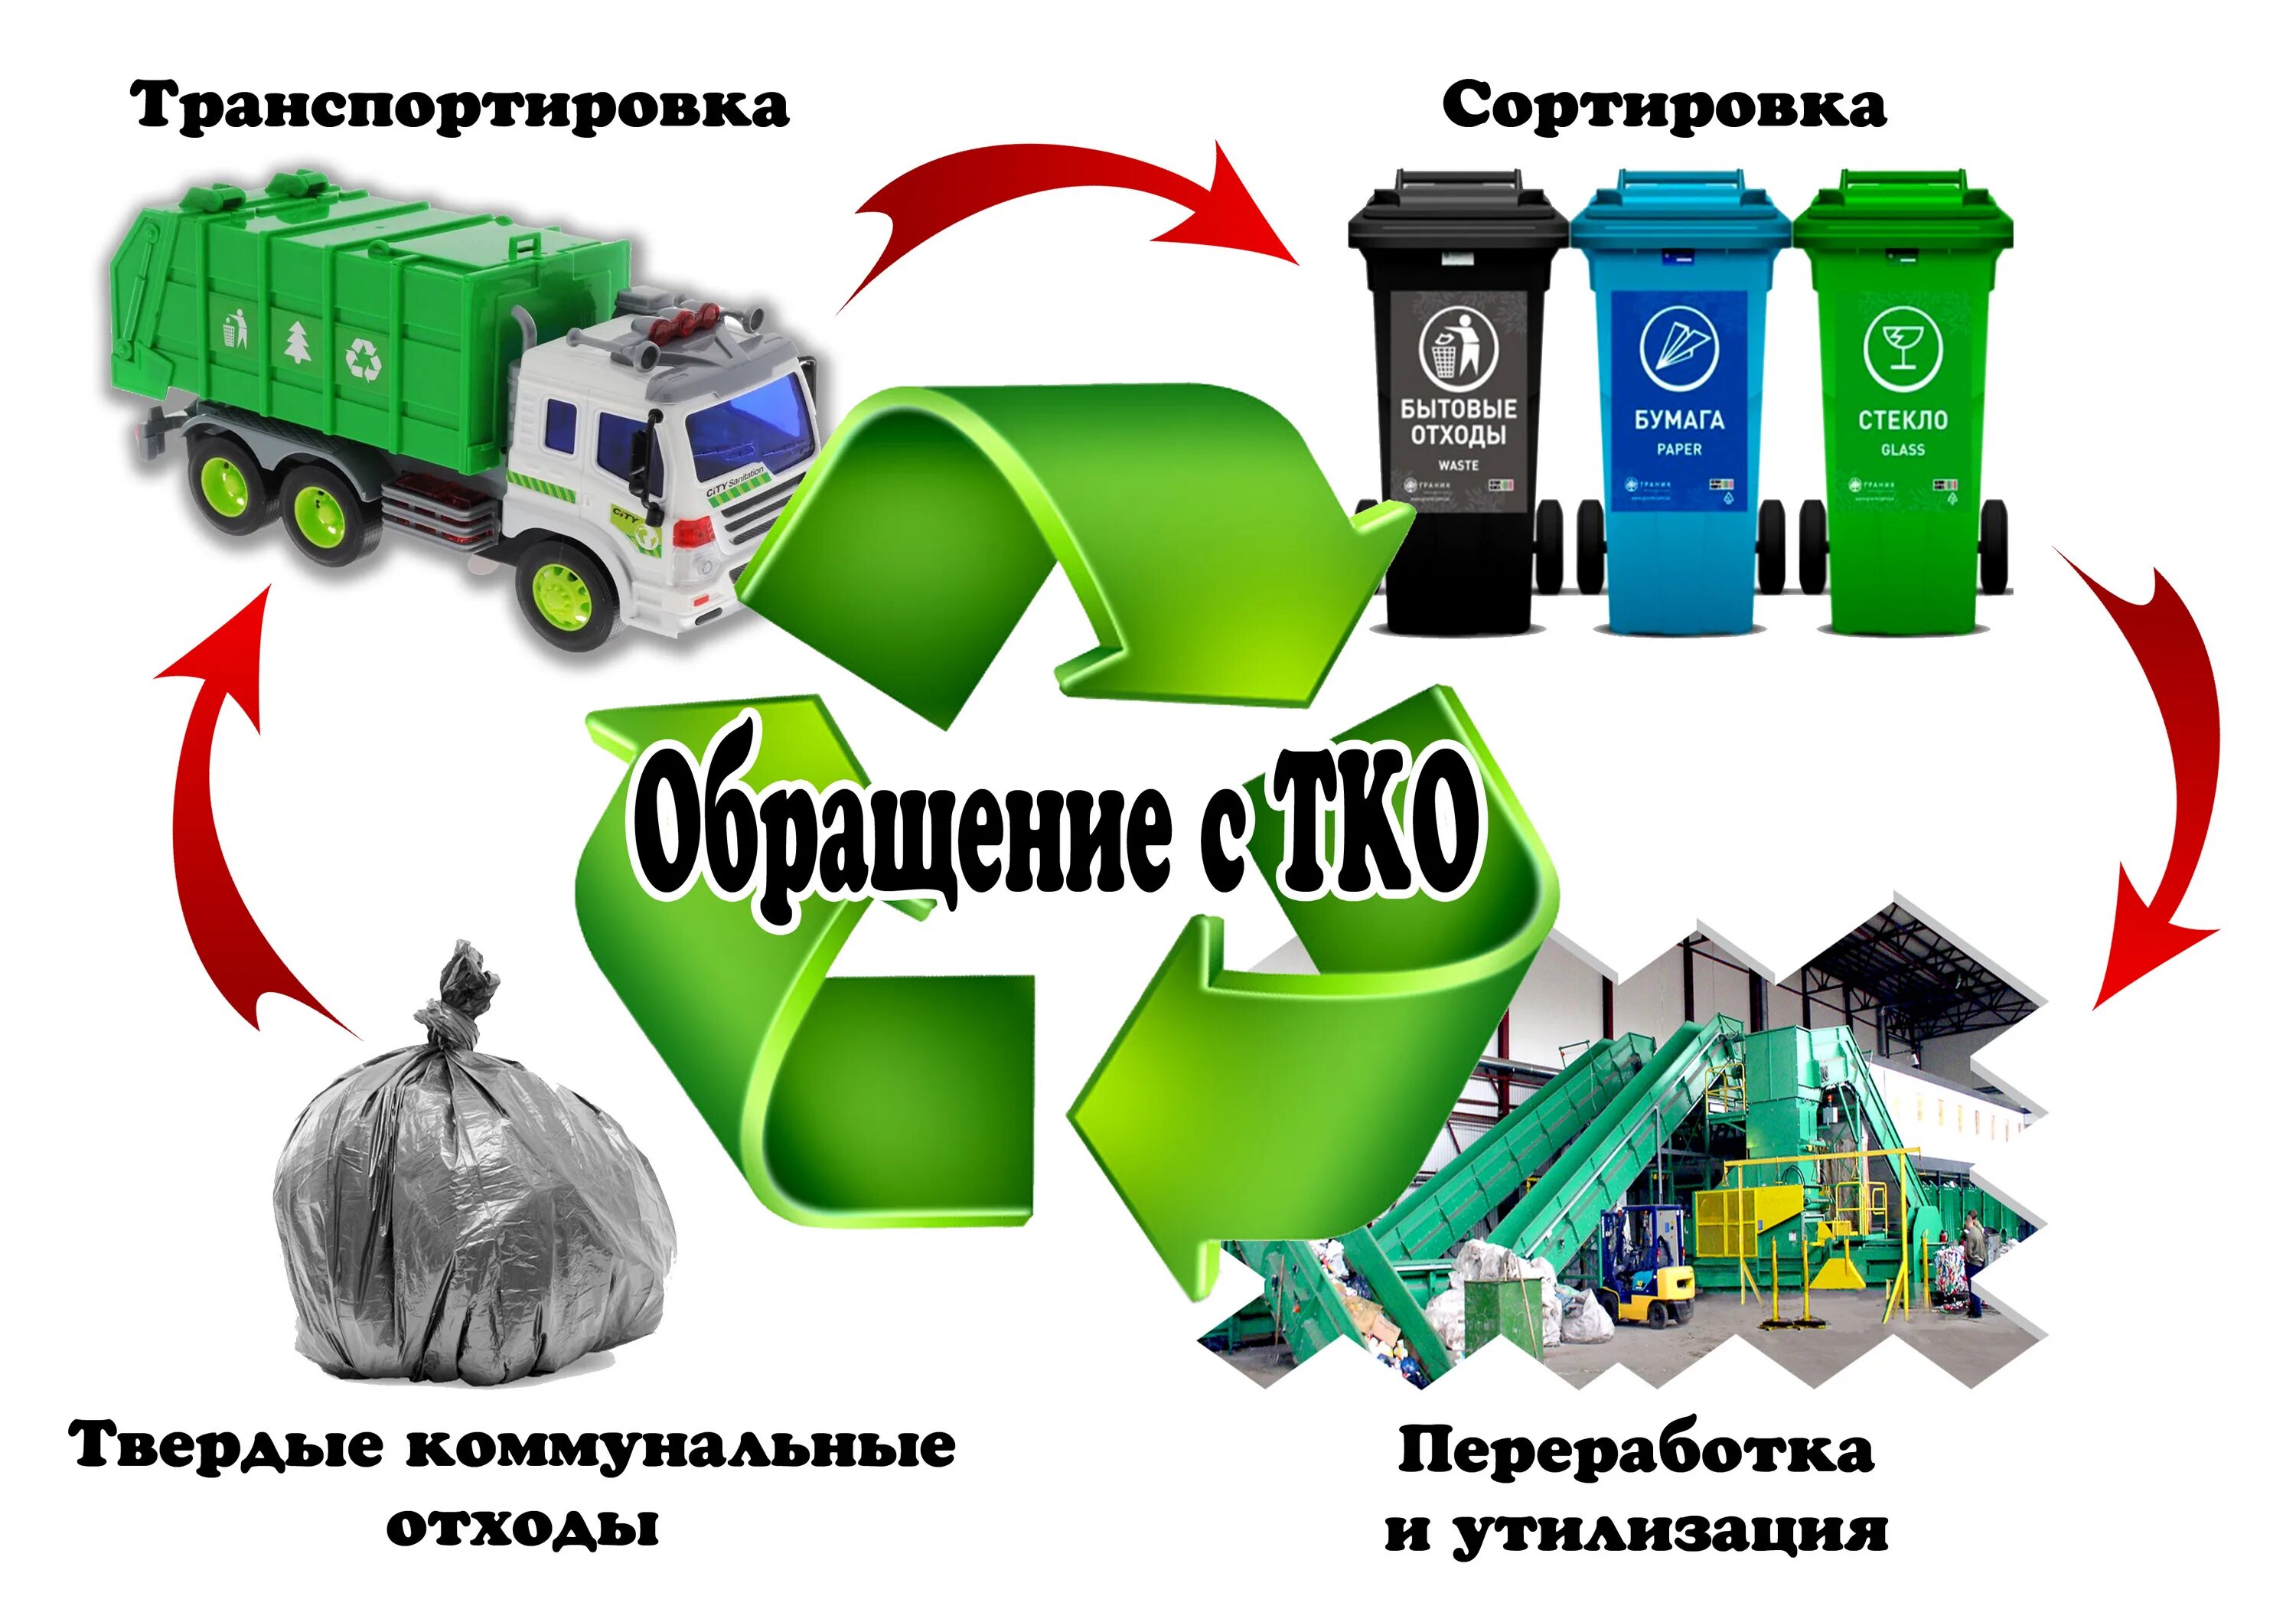 Сбор накопление и размещение отходов. Схема утилизации отходов в России. Схема утилизации мусорных отходов. Обращении с твердыми коммунальными отходами (ТКО). Схема системы переработки и утилизации ТКО.